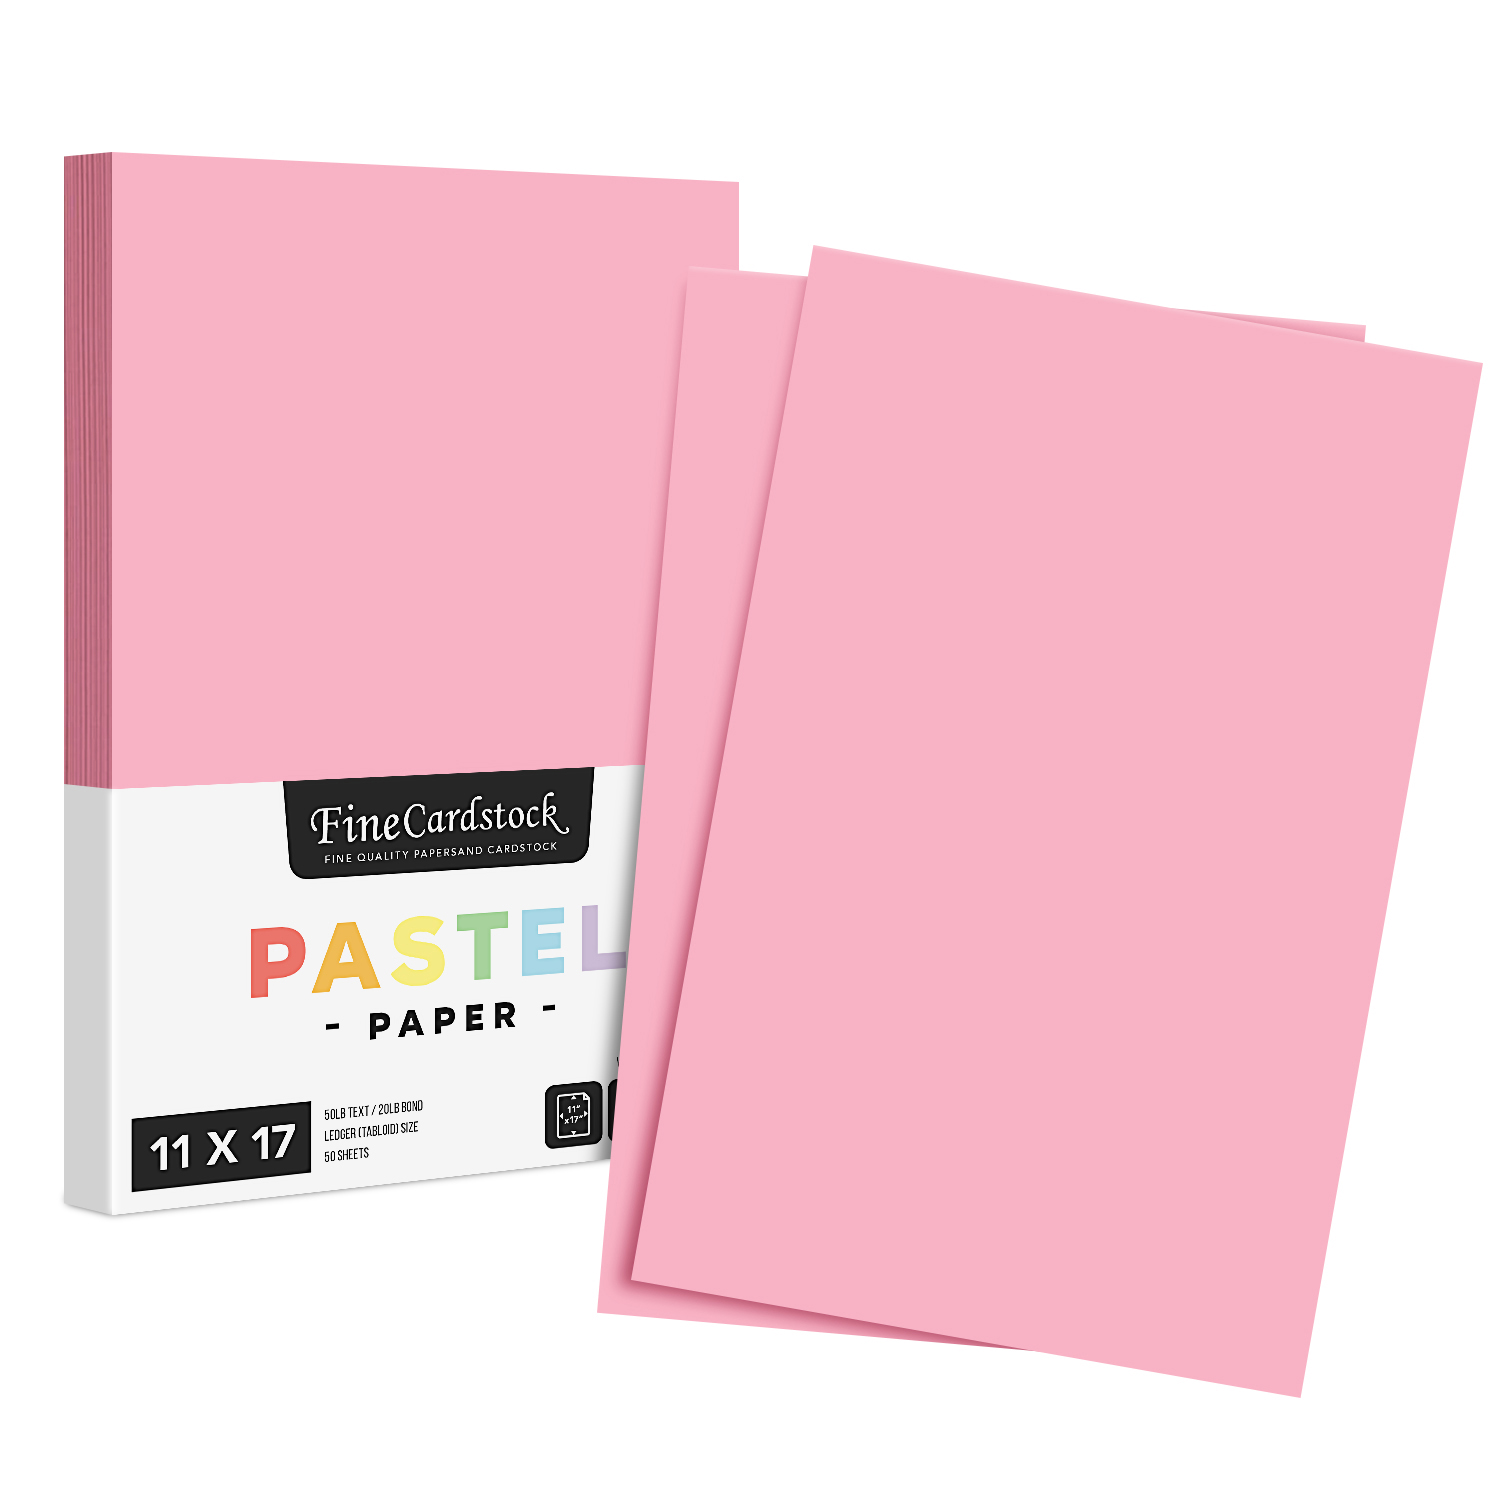 Pink - Color Paper 20lb. Size 8.5 x 14 Legal/Menu Size 50 per Pack